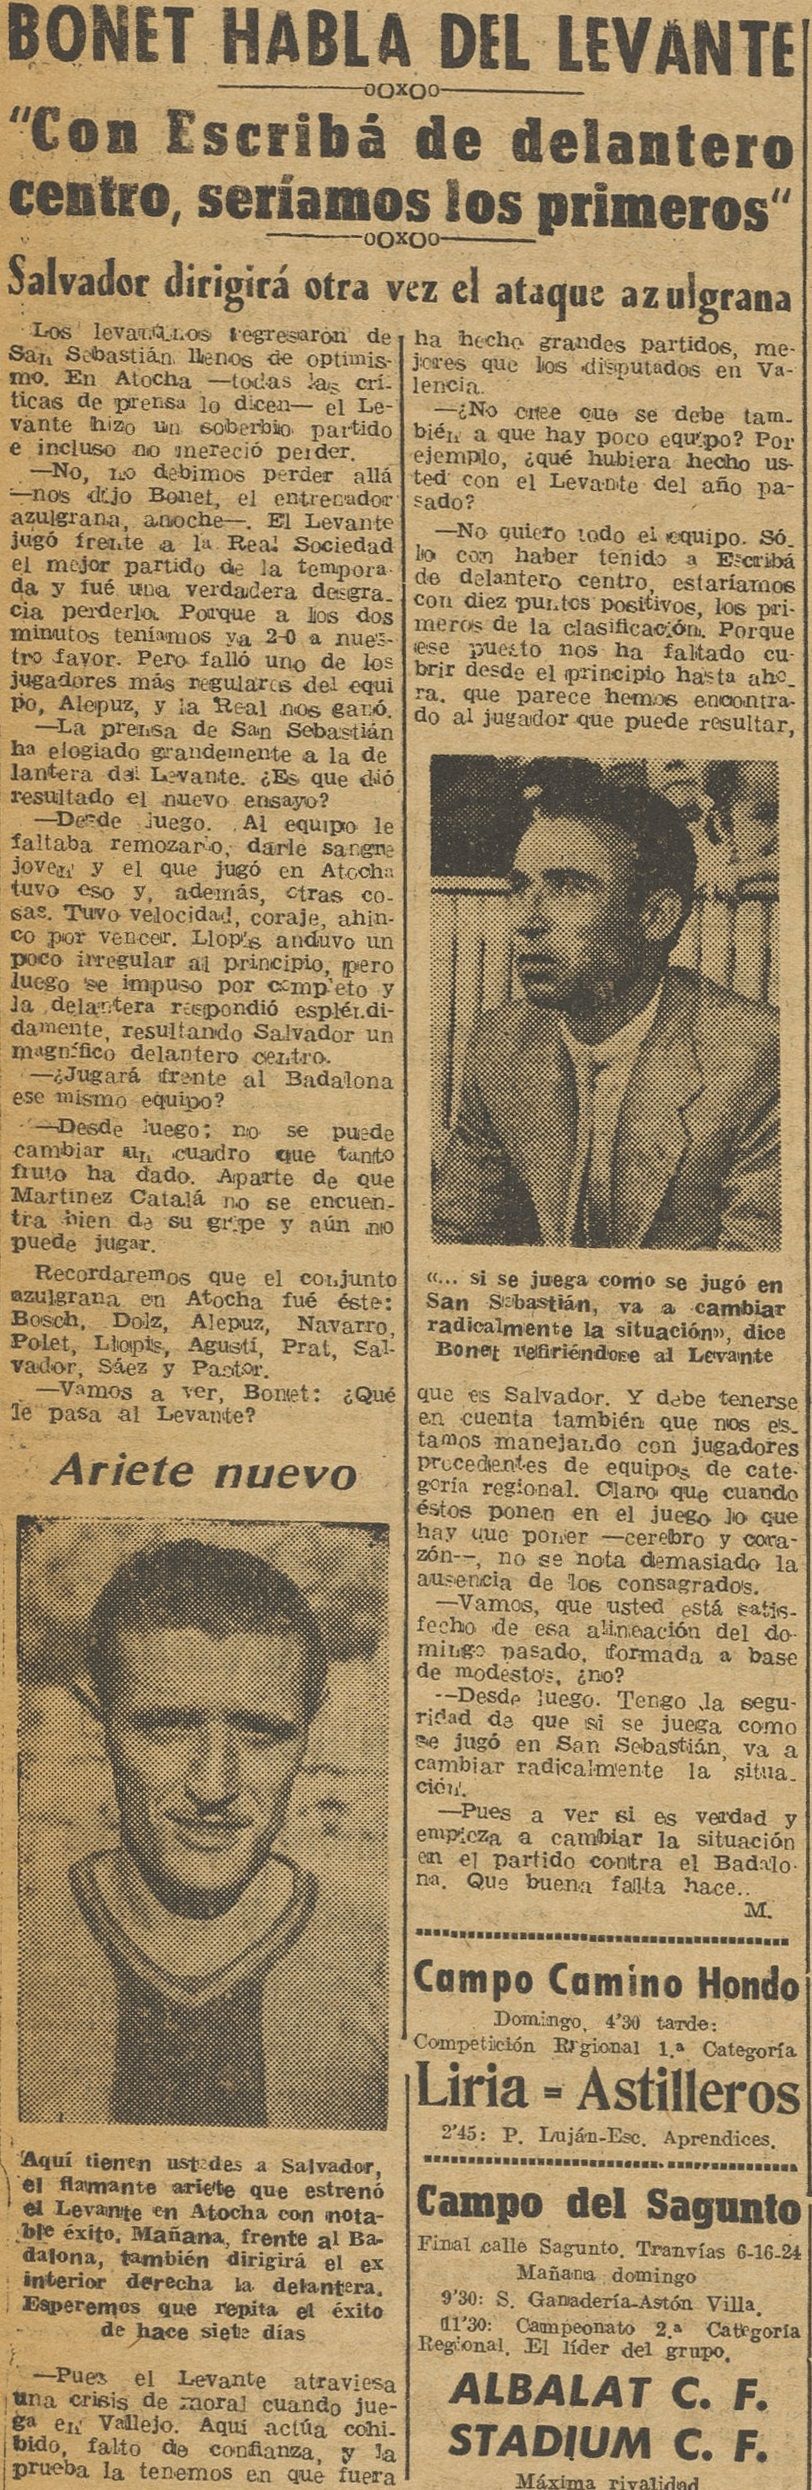 1949.02.12 (12 февраля 1949), интервью Бонета.jpg